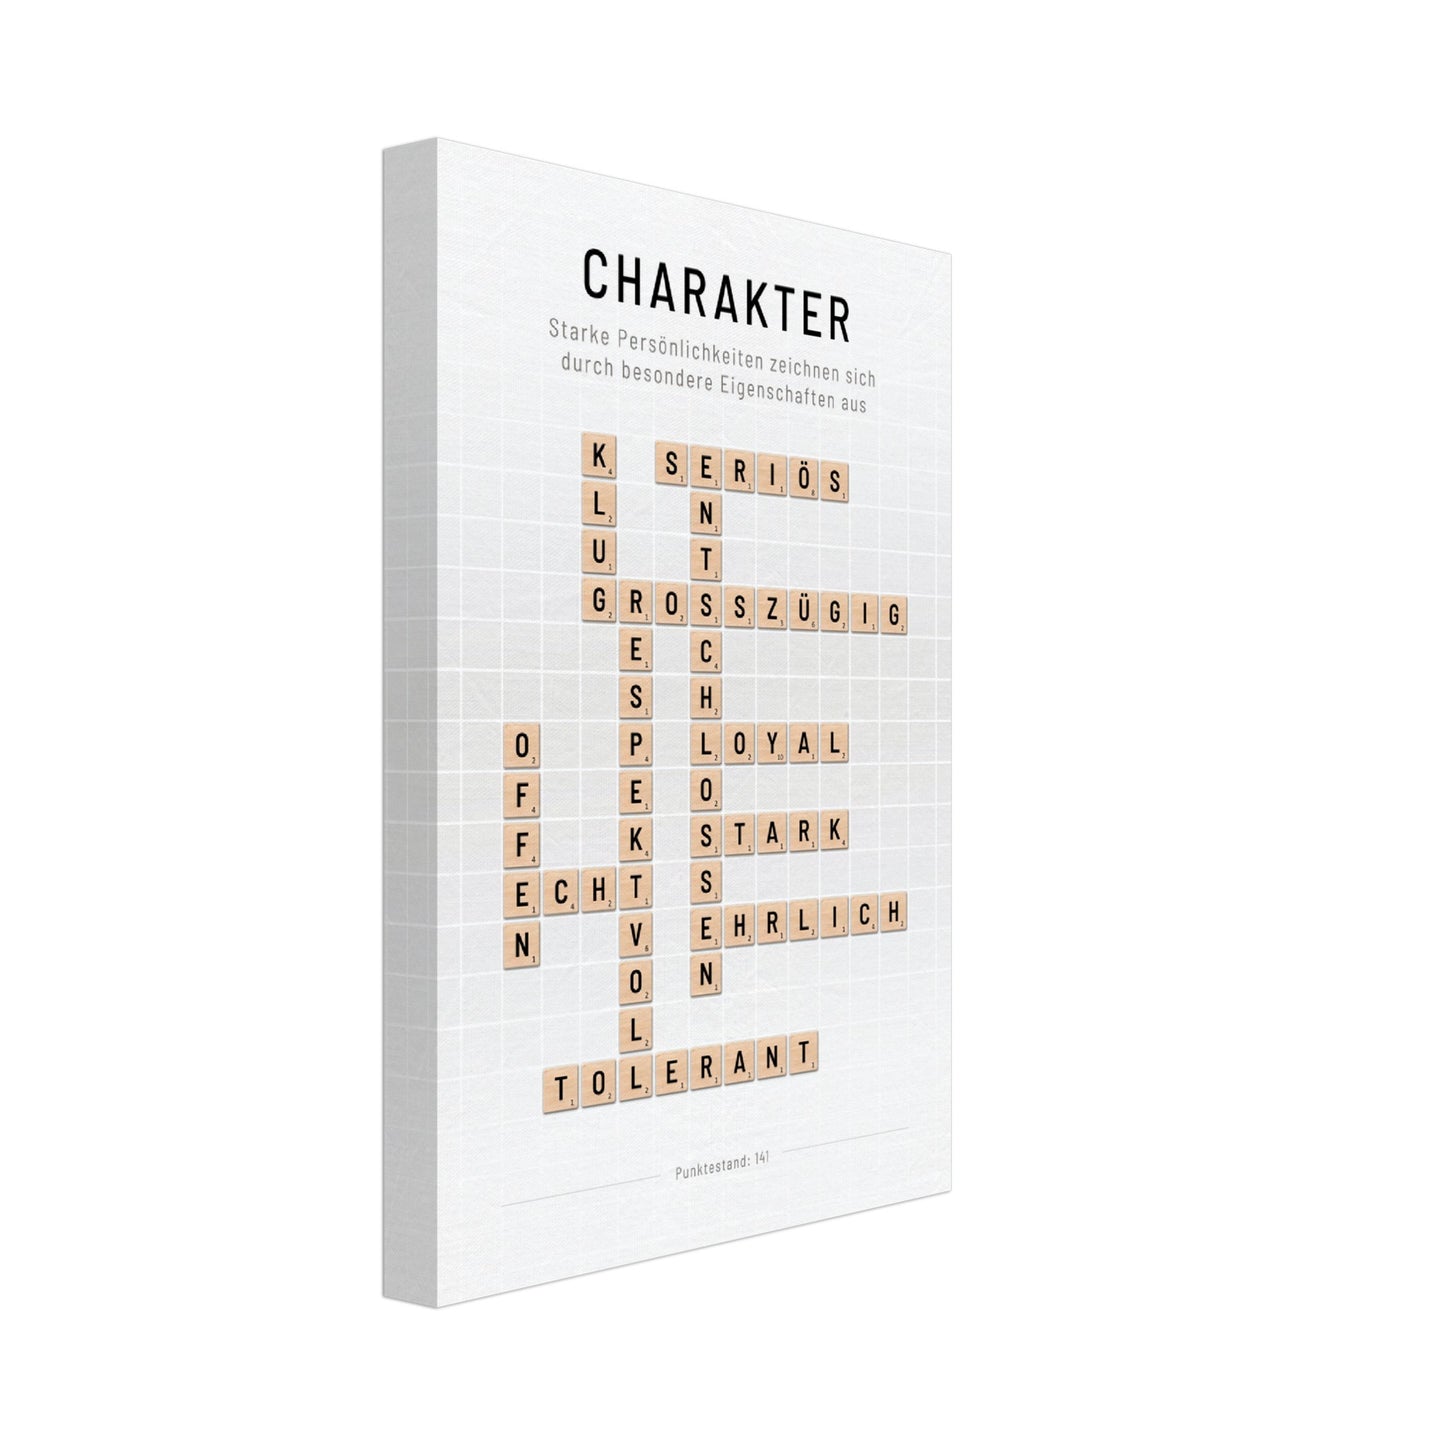 Charakter - Crossword-Wandbild - Leinwand Weiss Neutral im Hochformat - Typografie Worte Scrabble Brettspiel Sprache Leben Alltag